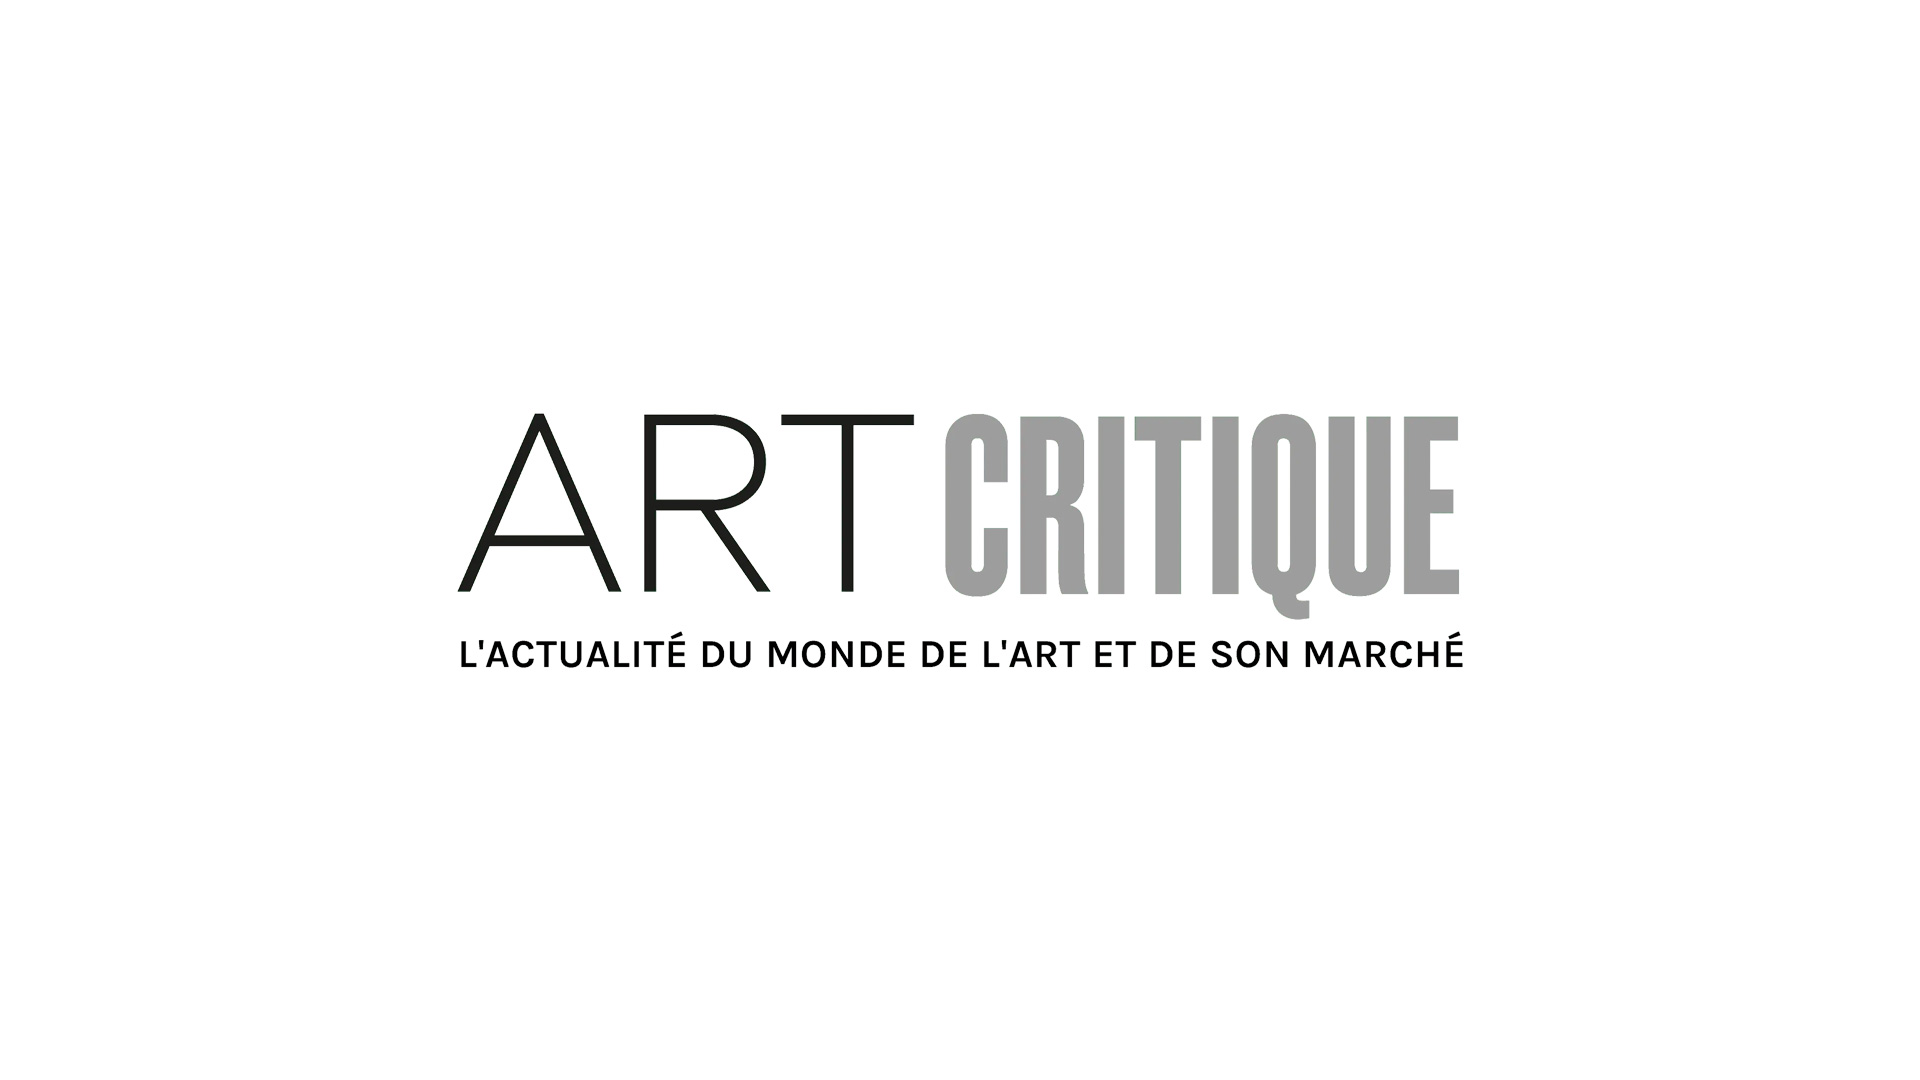 ‘Leonardo da Vinci’ shatters Louvre exhibition attendance records